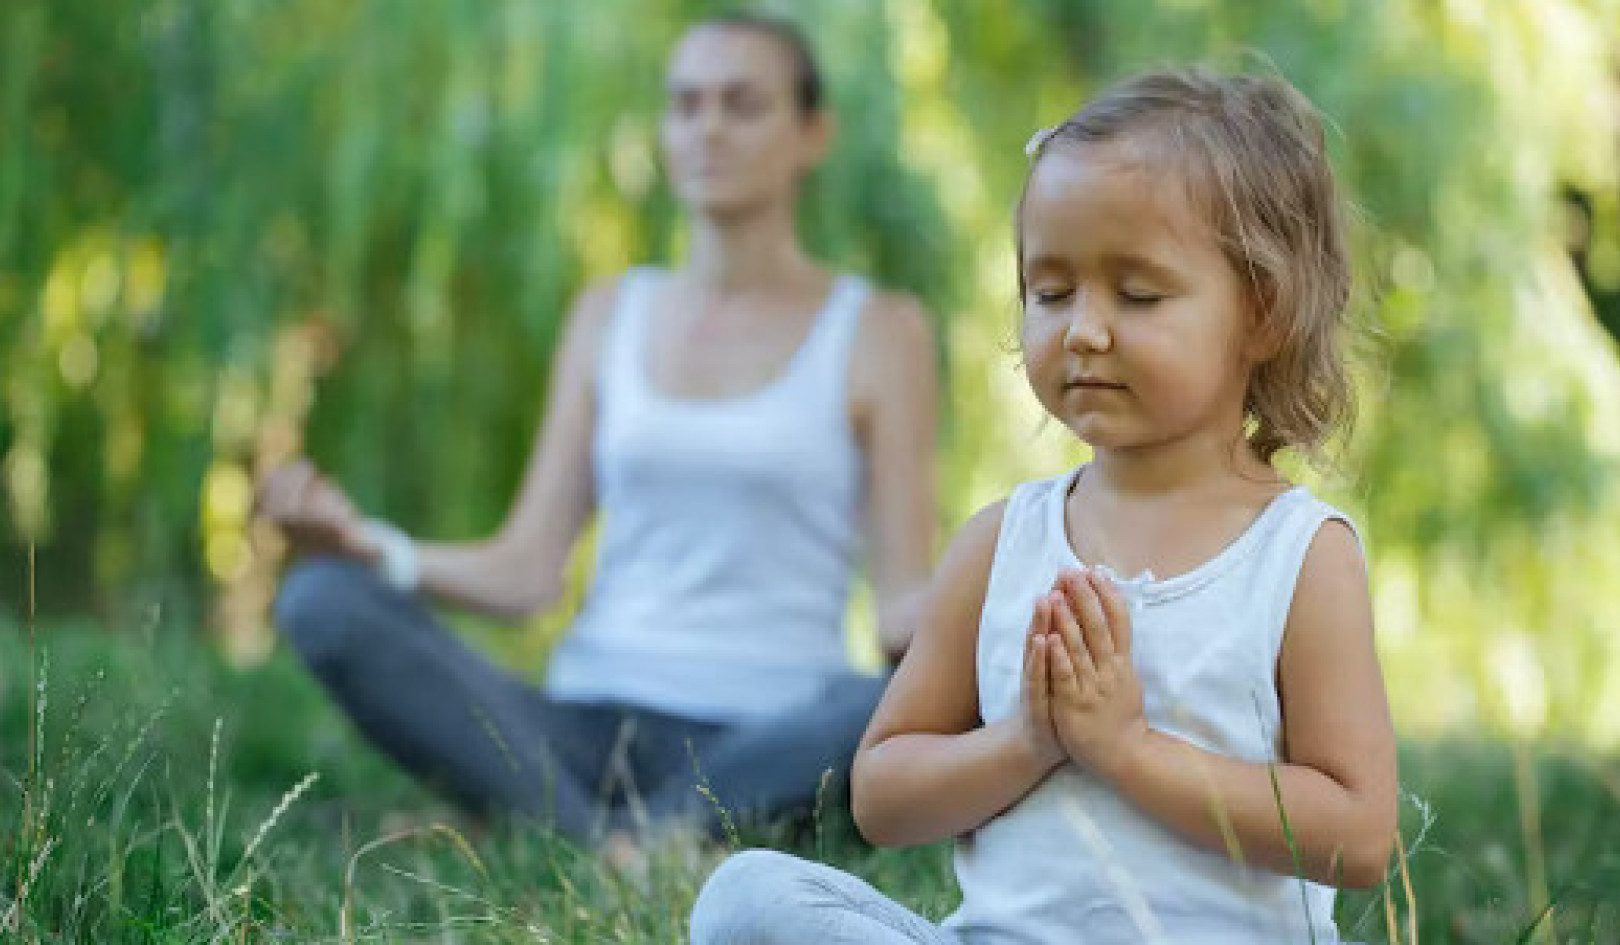 Медитація має потенціал для лікування дітей, які страждають від травм, важких діагнозів або стресу